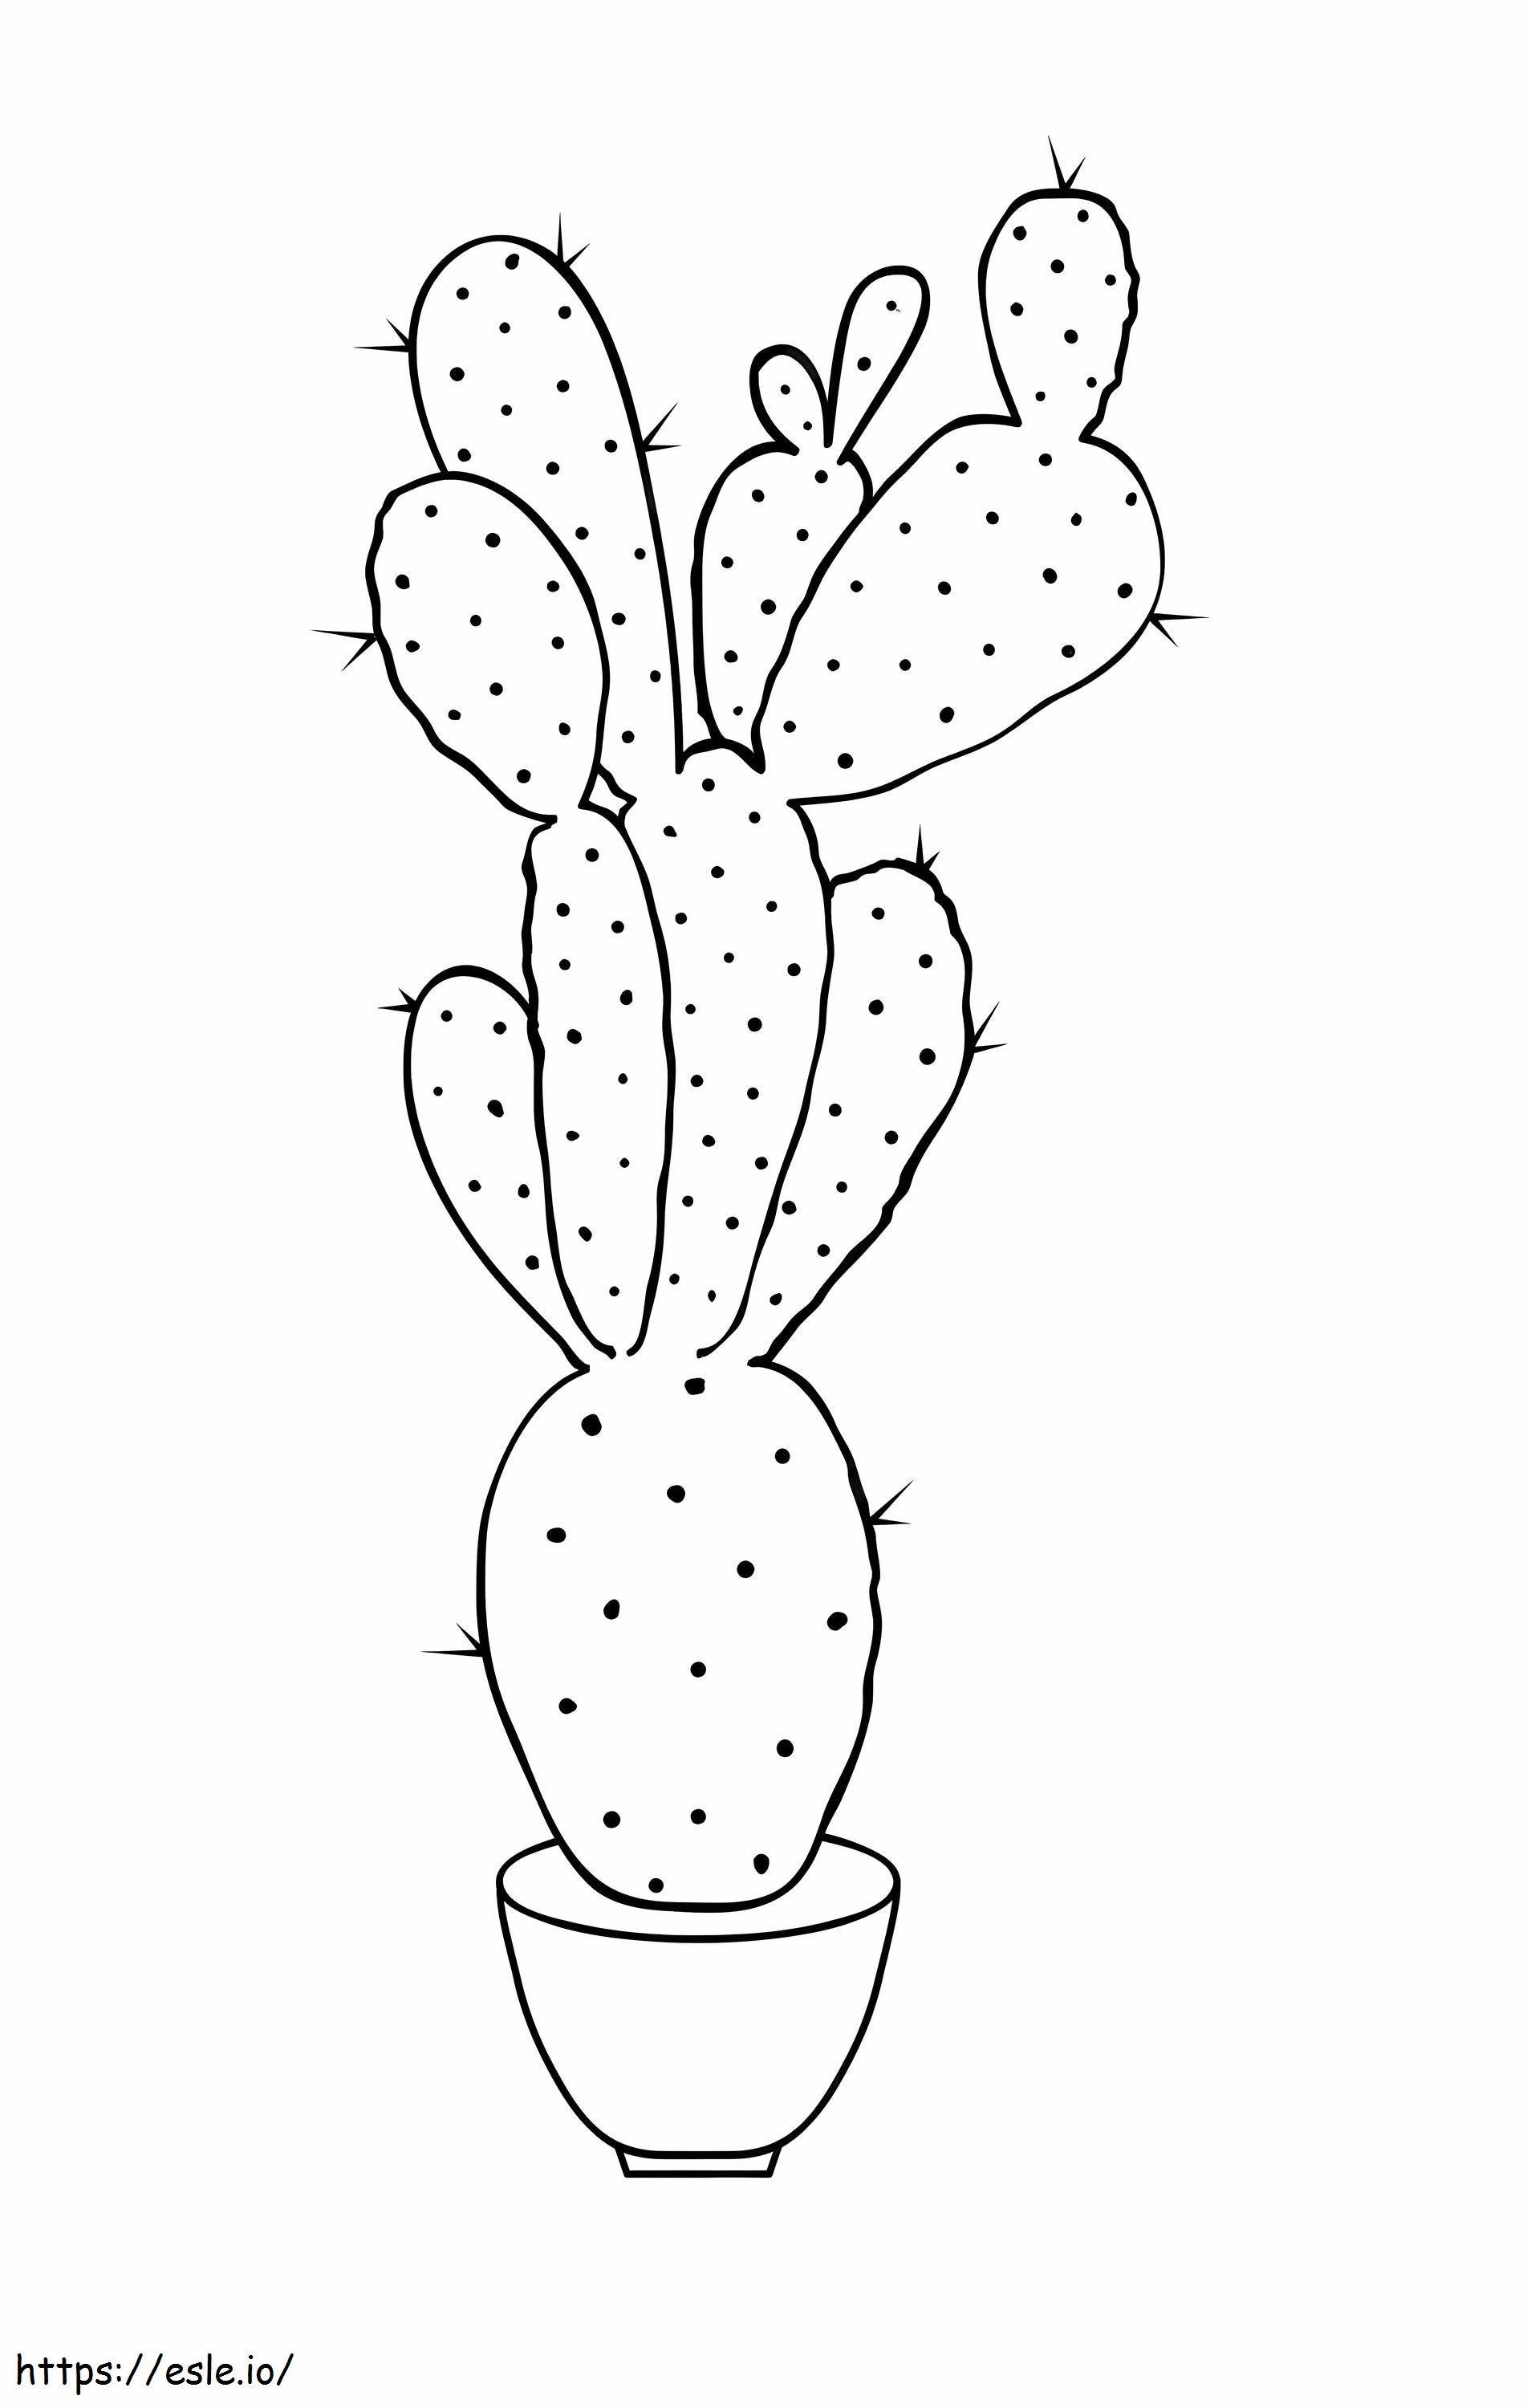 Coloriage Cactus gratuit à imprimer dessin